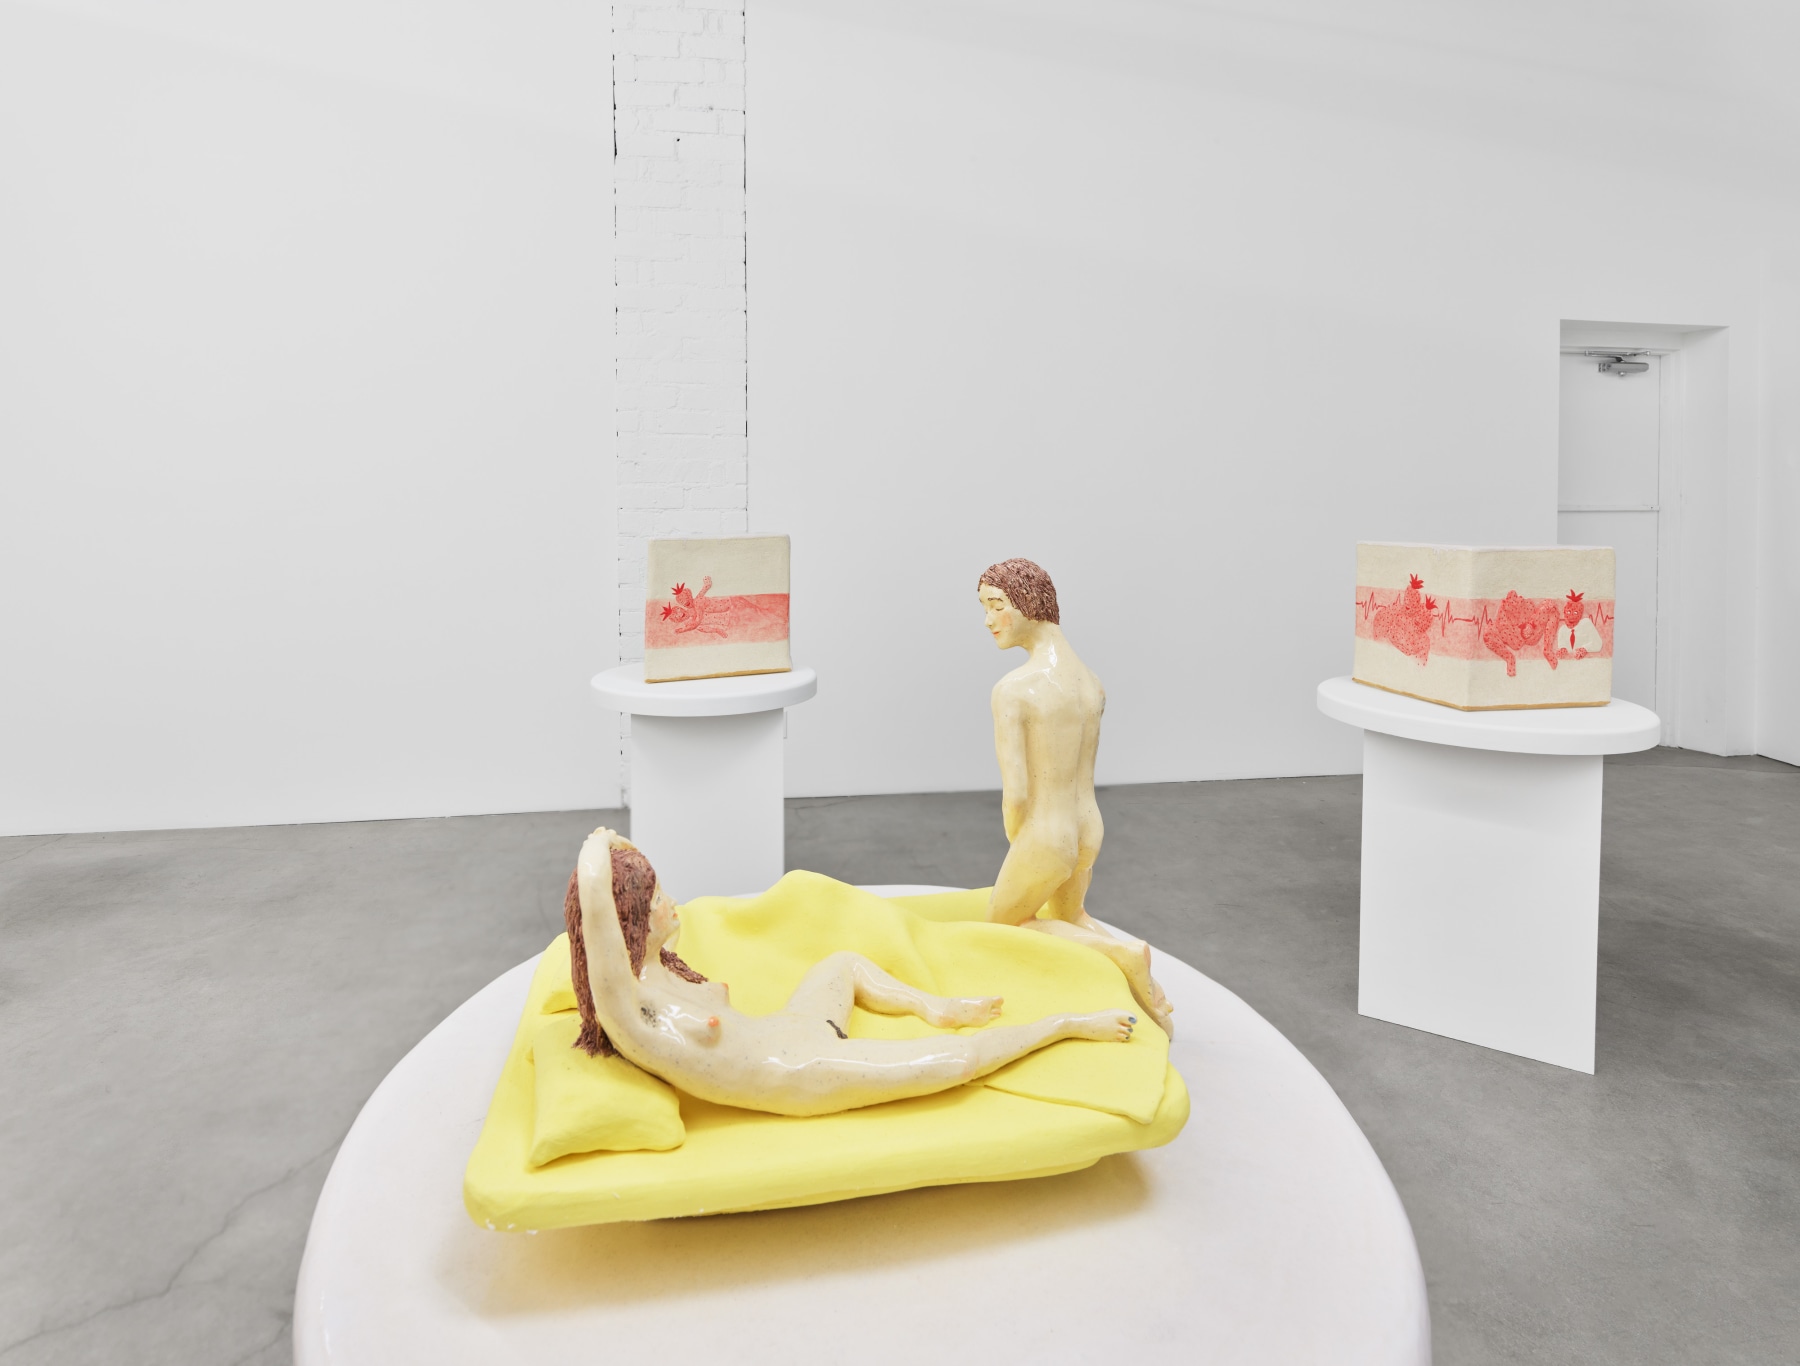 Elizabeth Jaeger, Piece of Cake, installation view, 2021